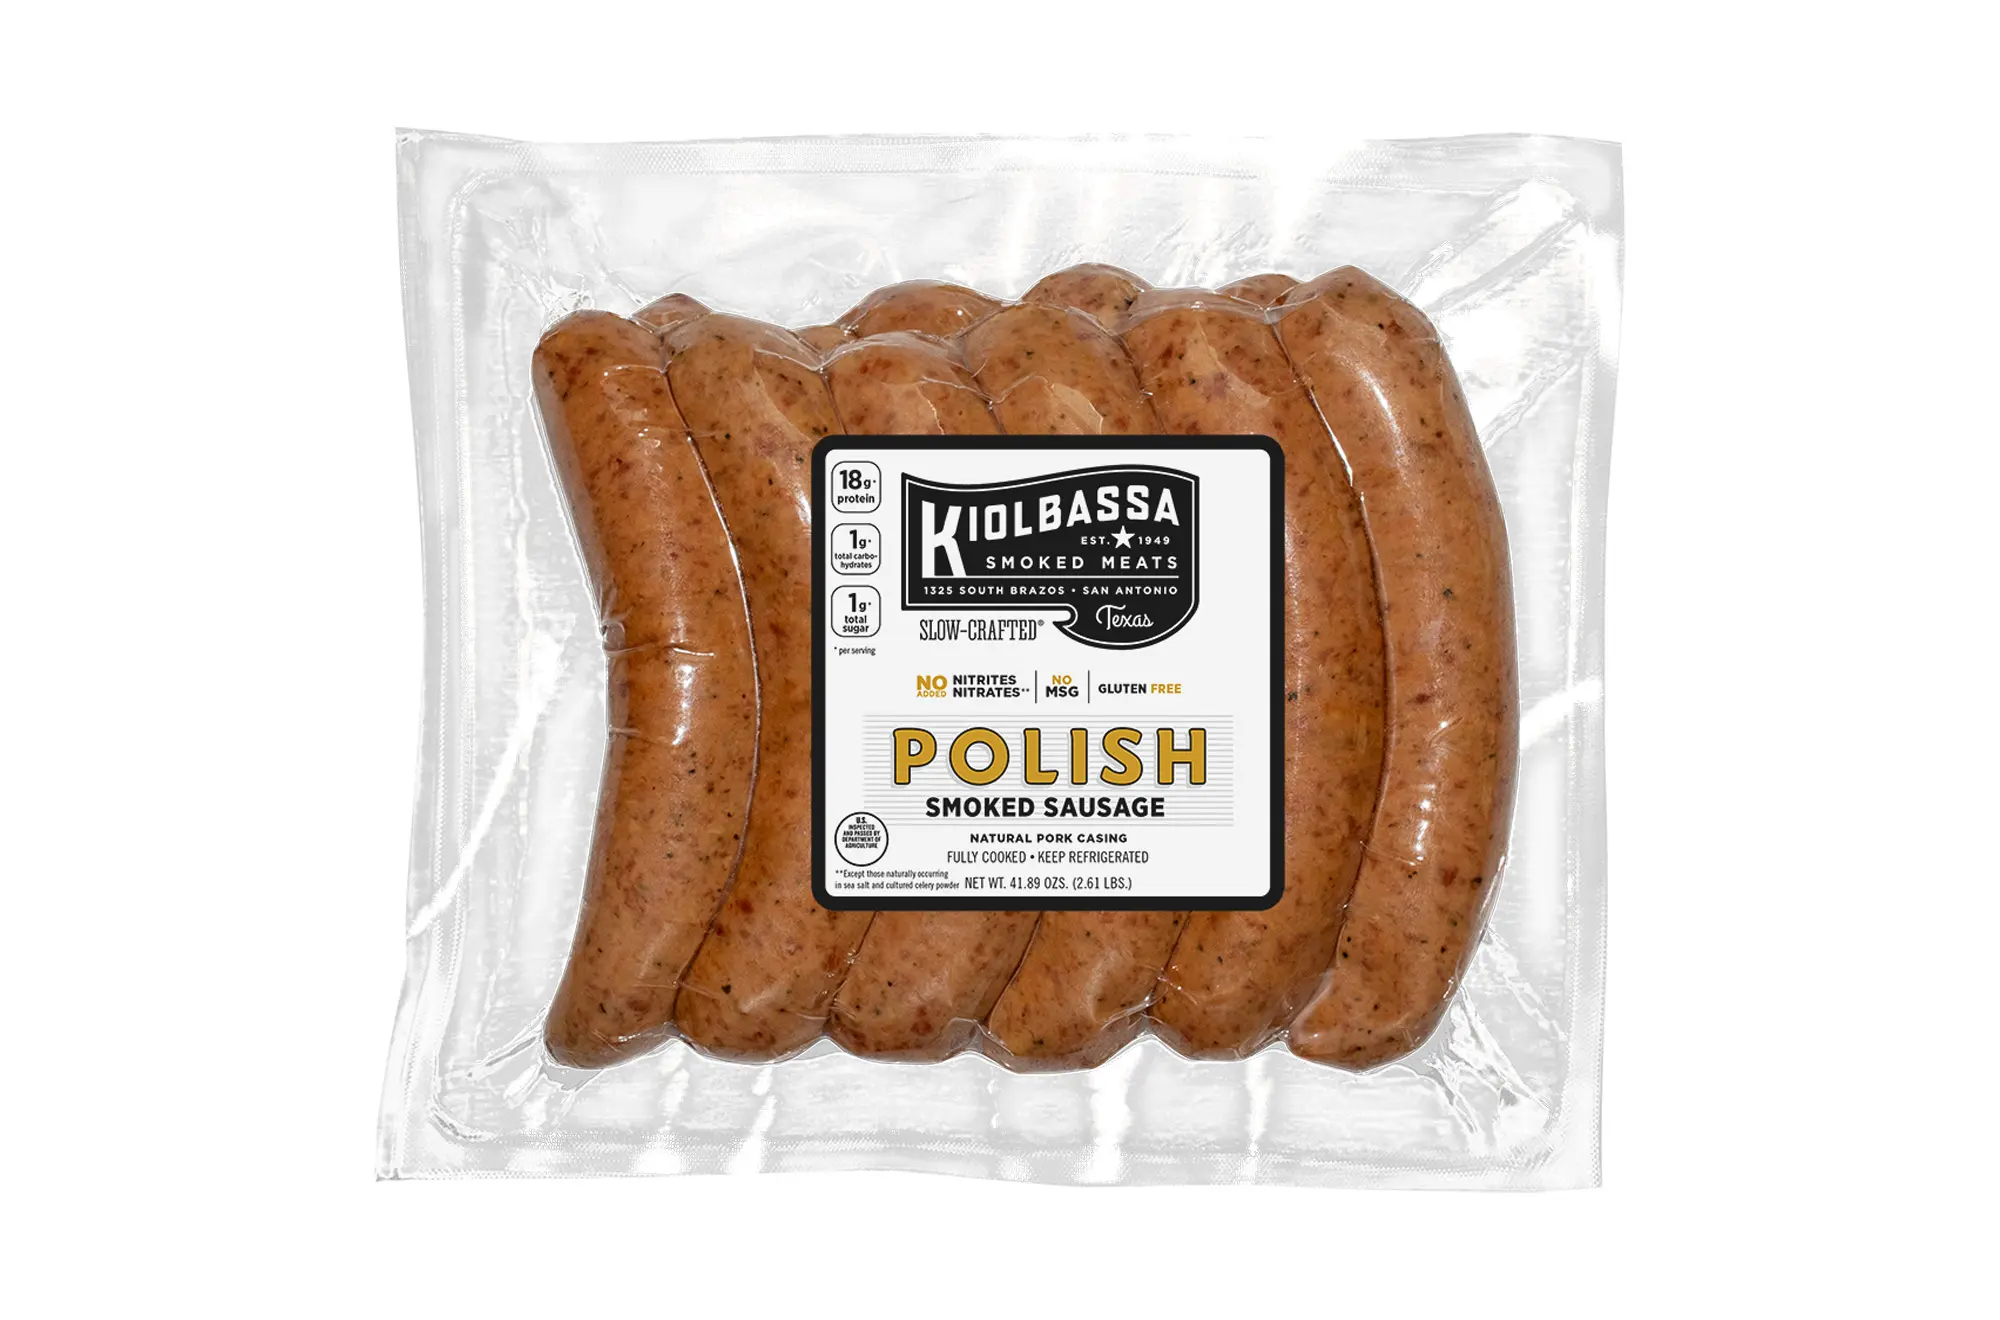 kiolbassa polish smoked sausage - Where is kiolbassa sausage made